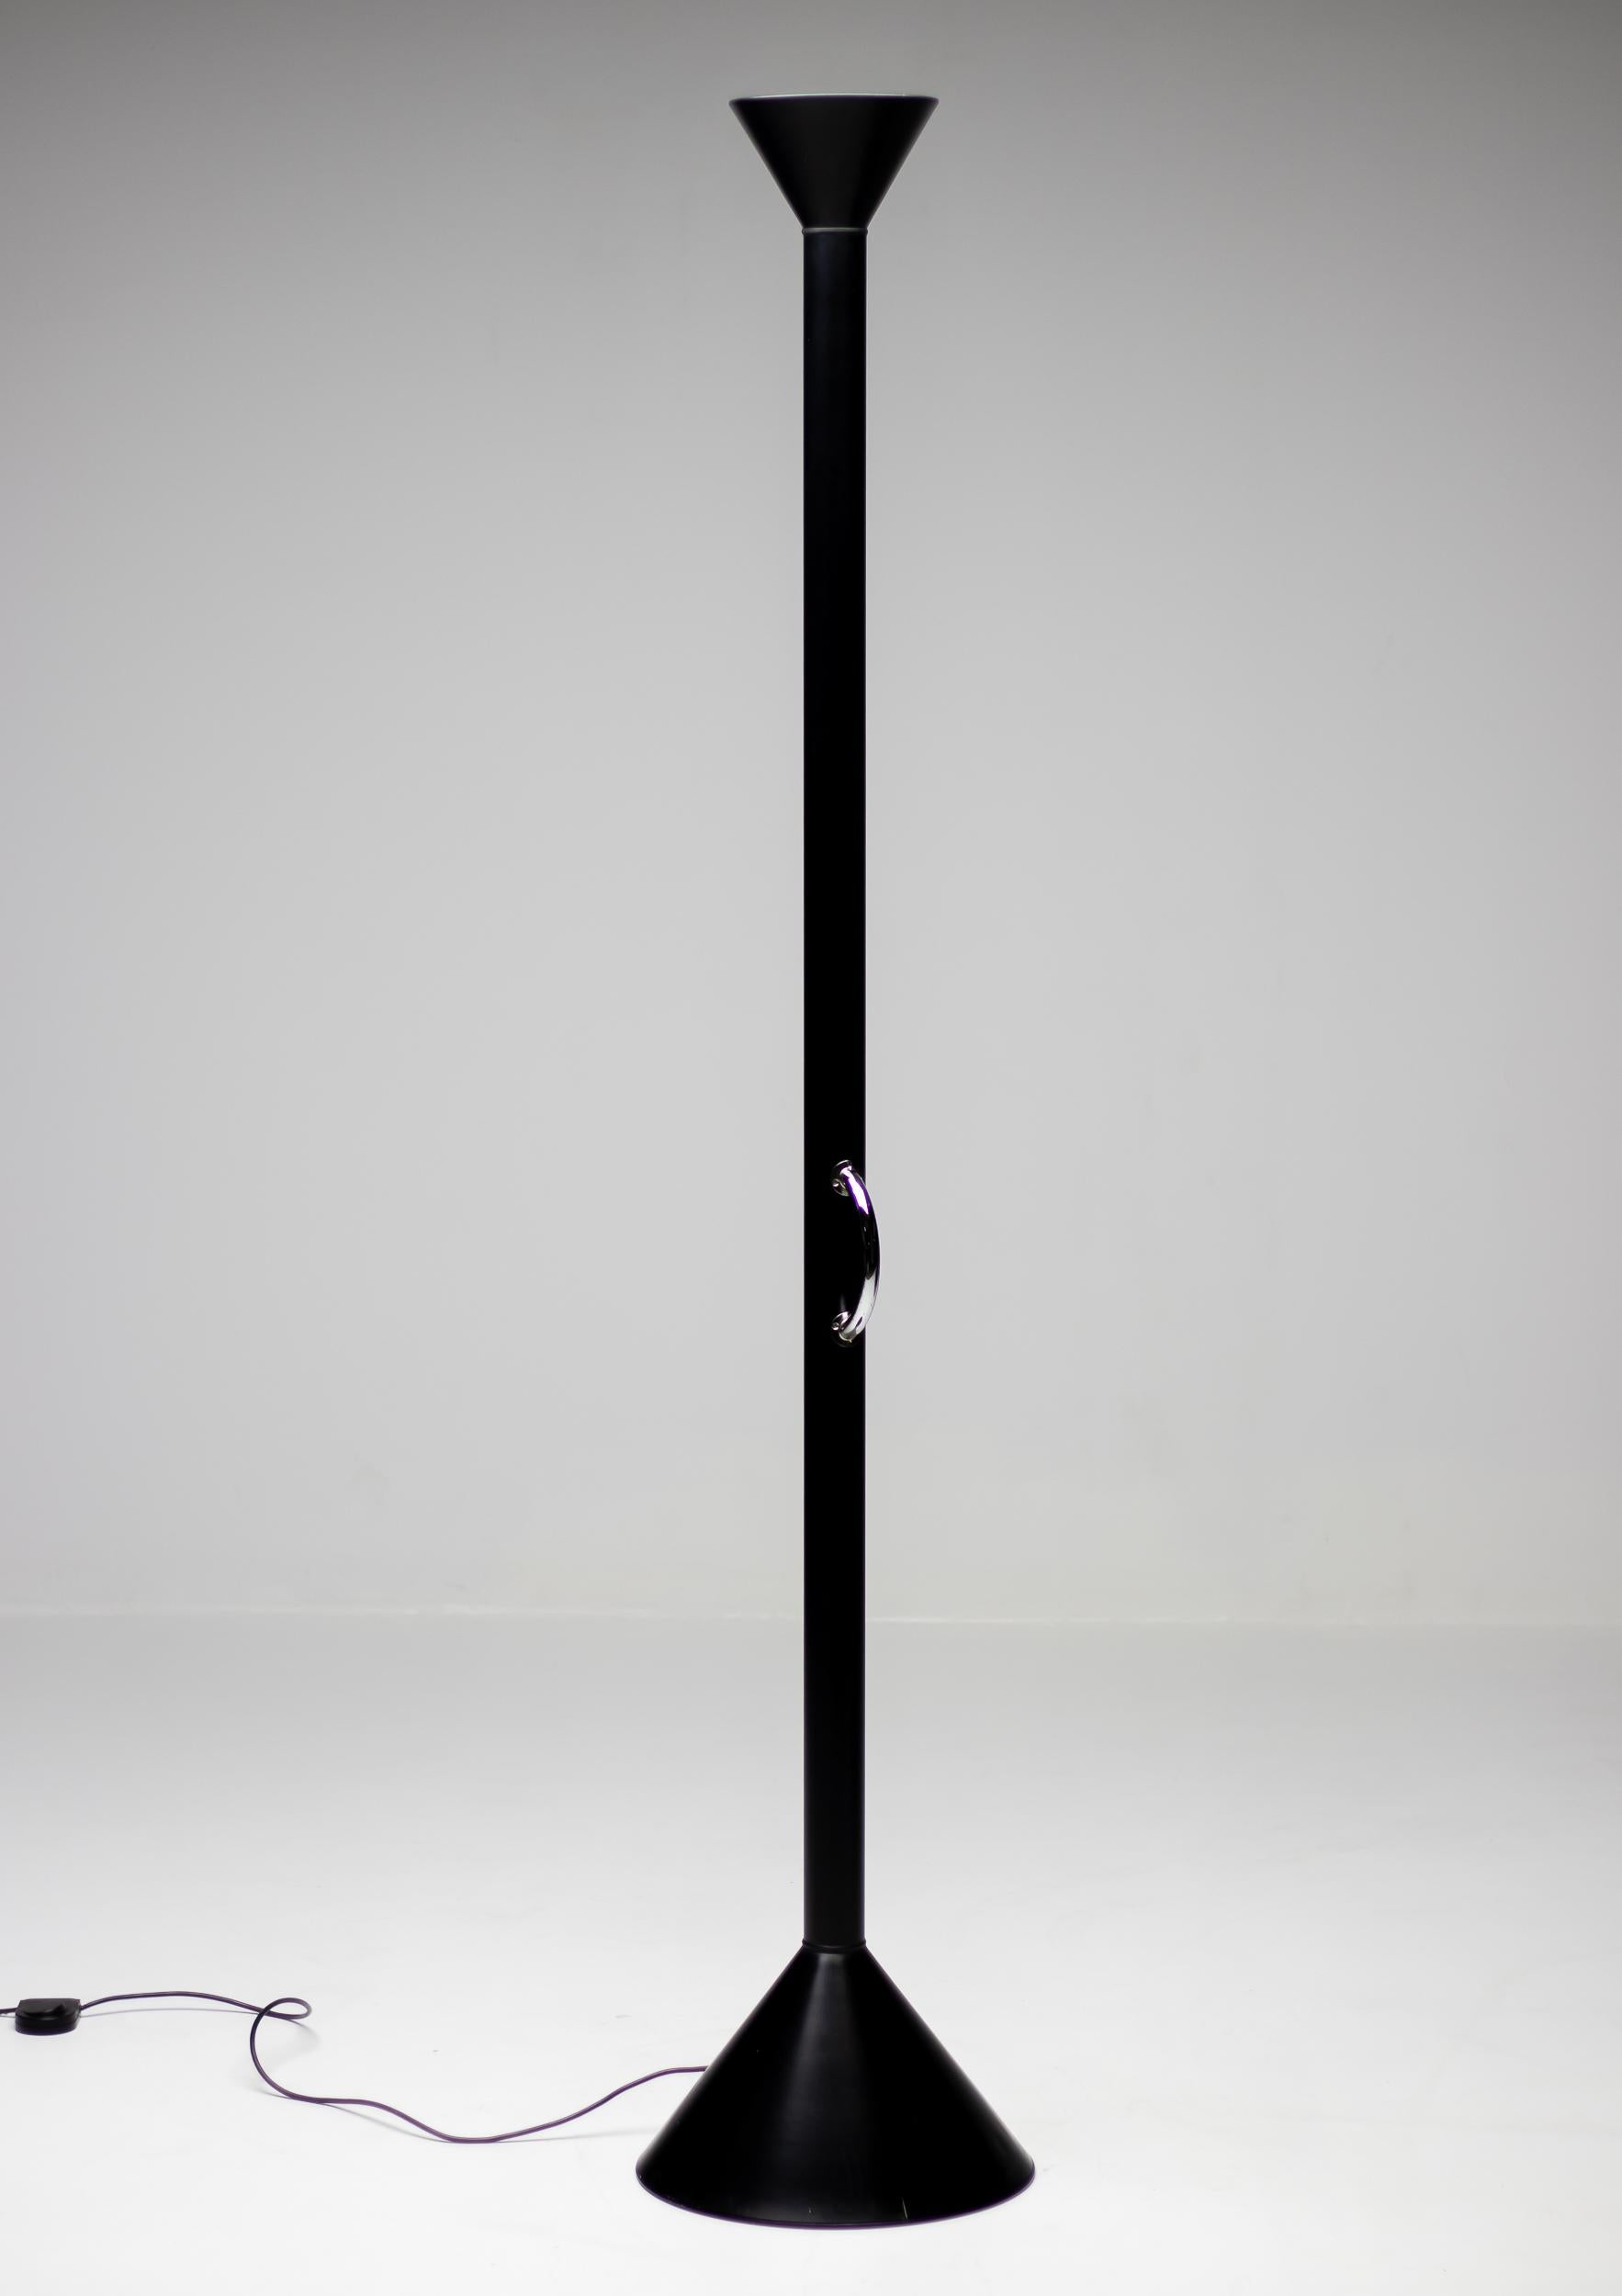 Édition limitée du lampadaire Callimaco d'Ettore Sottsass en noir.
Callimaco a été conçu par Ettore Sottsass pour Artemide en 1982 et est devenu une véritable icône des années 1980.
La lampe est dépourvue de tout élément superflu et se limite à